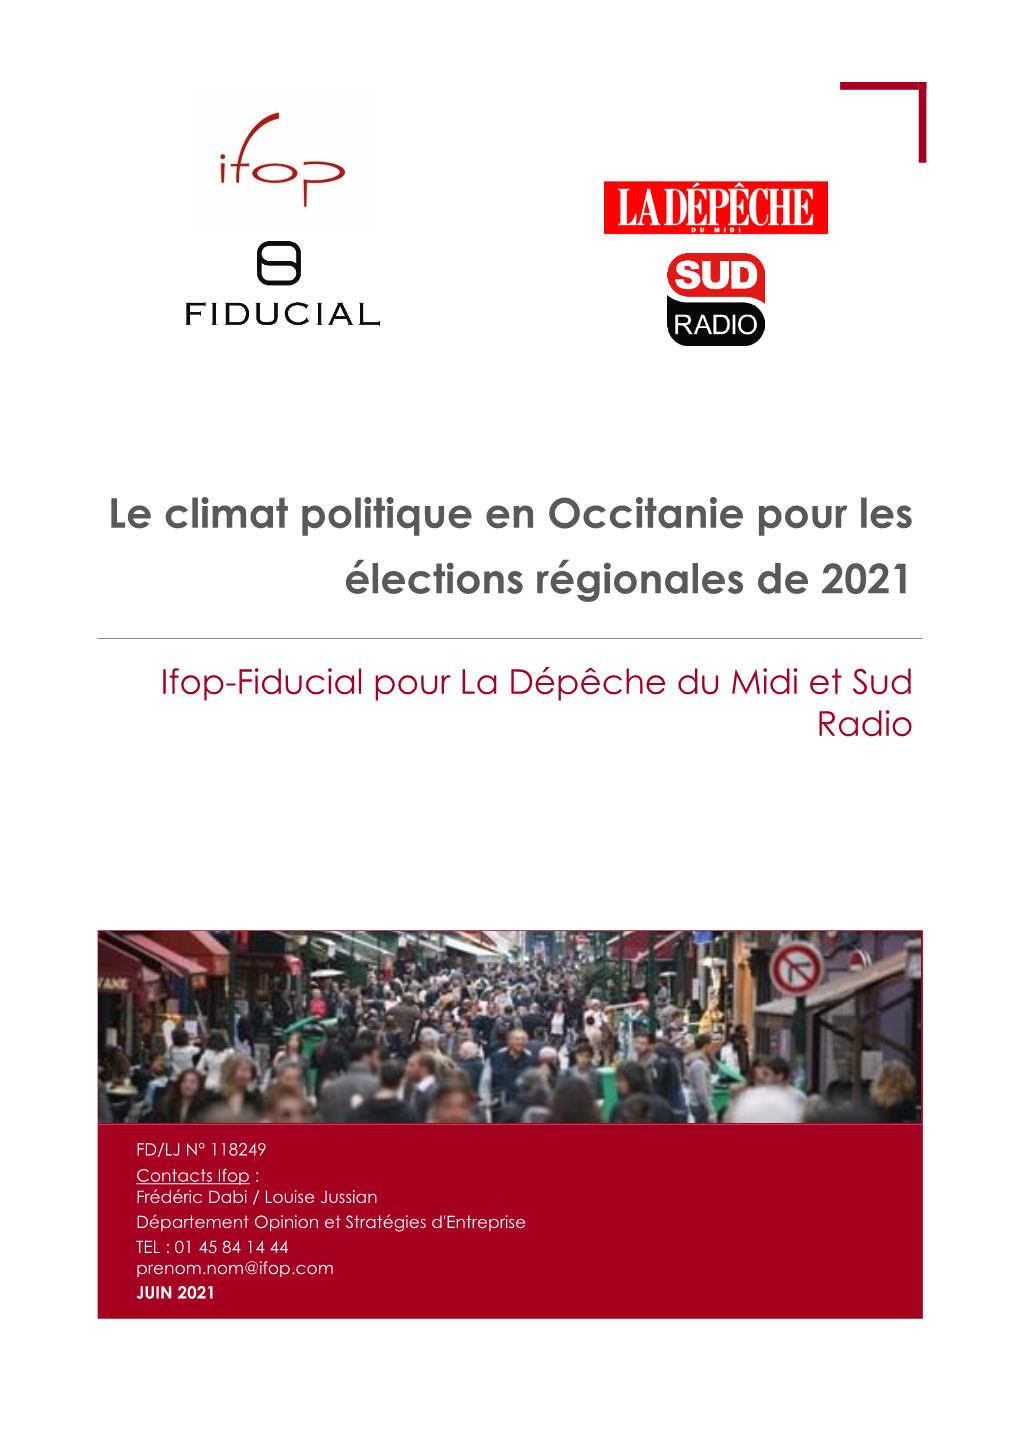 Le Climat Politique En Occitanie Pour Les Élections Régionales De 2021